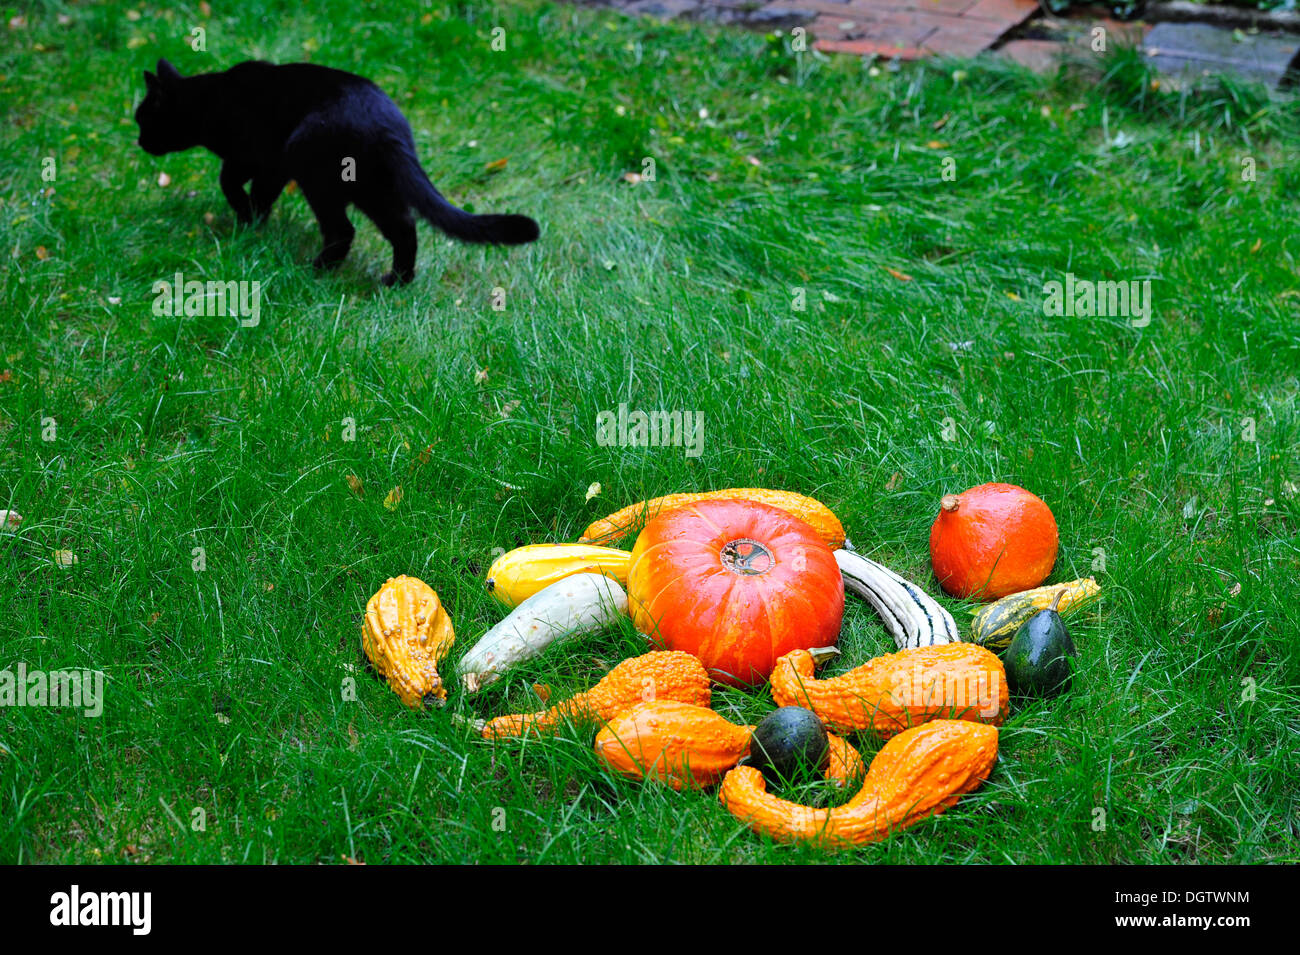 Domestic cat between pumpkins Stock Photo